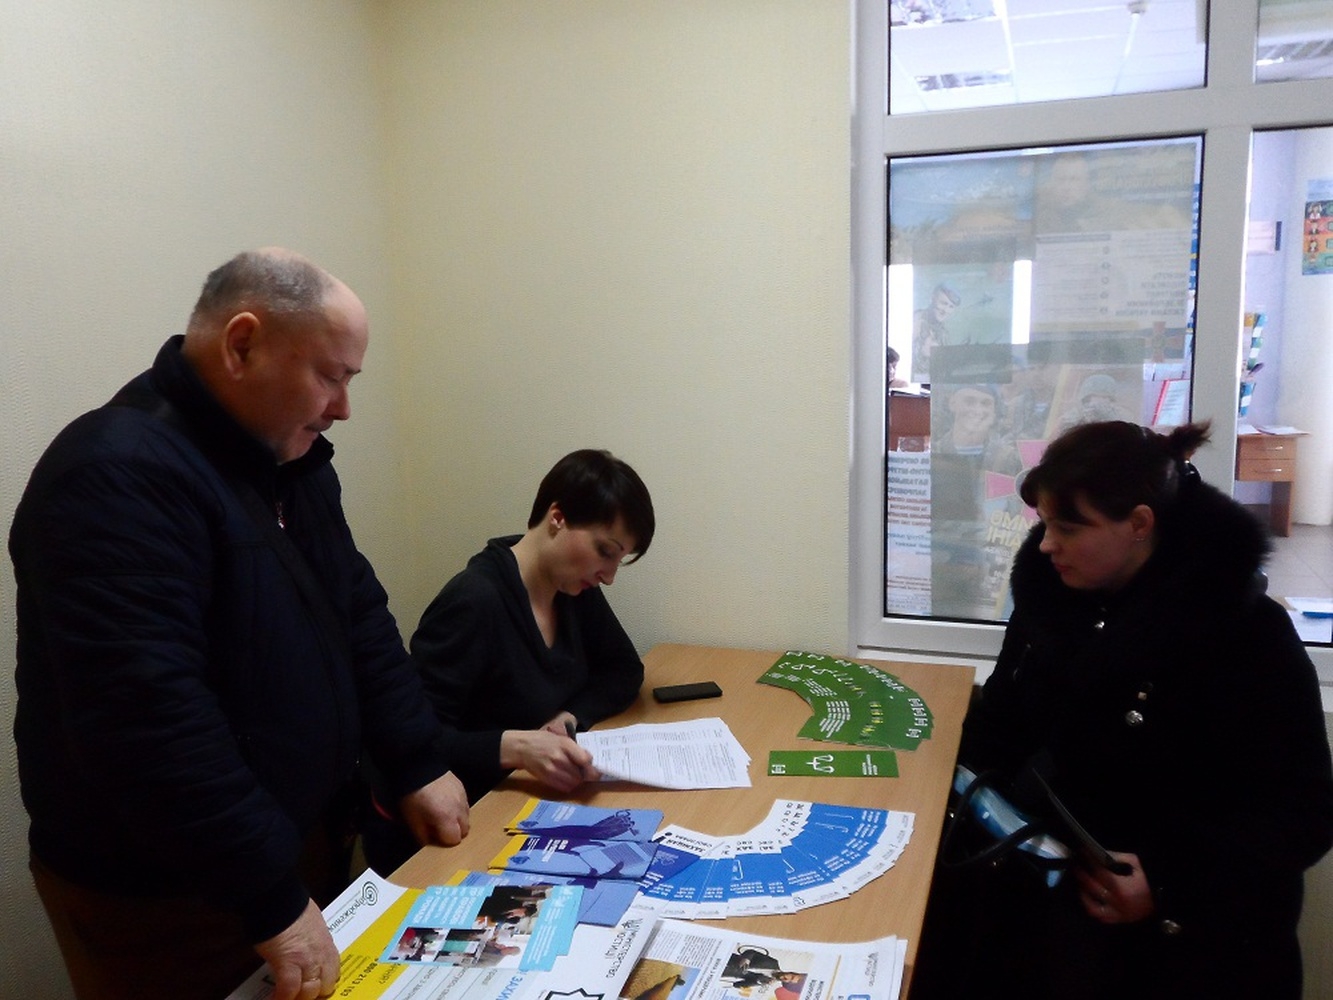 В лютому 2018 року 90 жителів Татарбунарщини отримали безоплатну правову допомогу